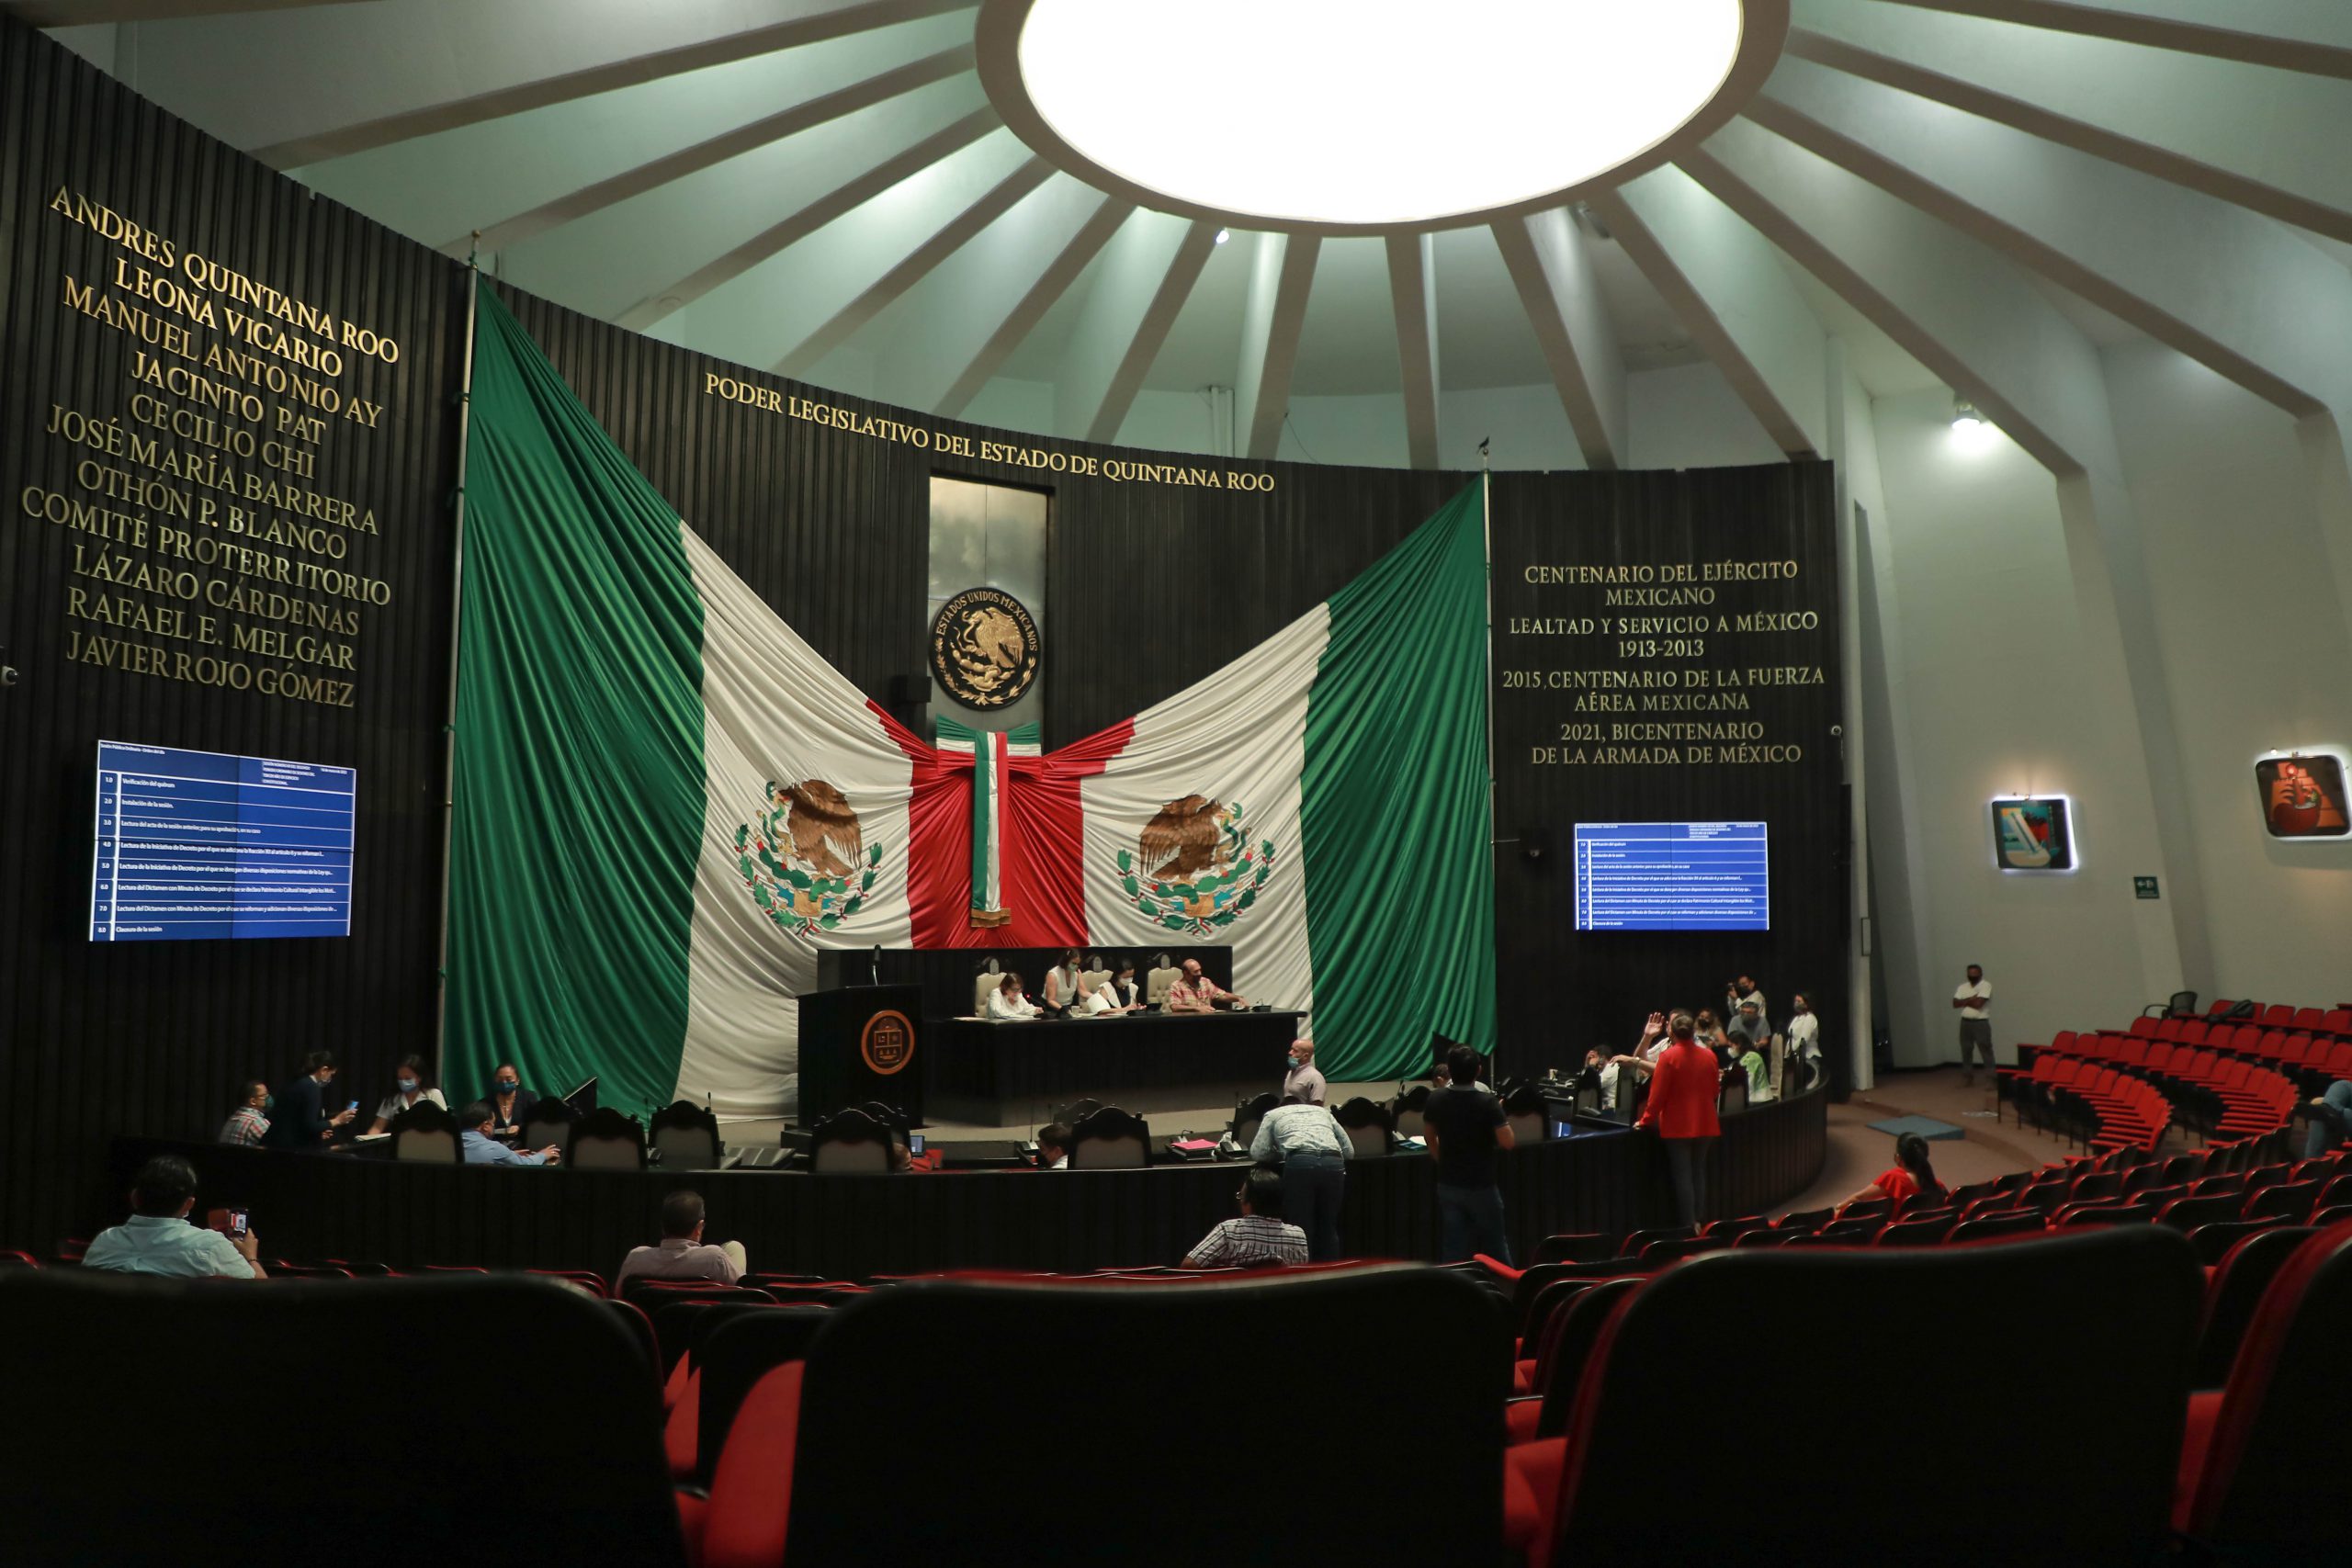 La XVI Legislatura del Estado de Quintana Roo aprobó por unanimidad una reforma legal que dota de autonomía de gobierno a la máxima casa de estudios de la entidad